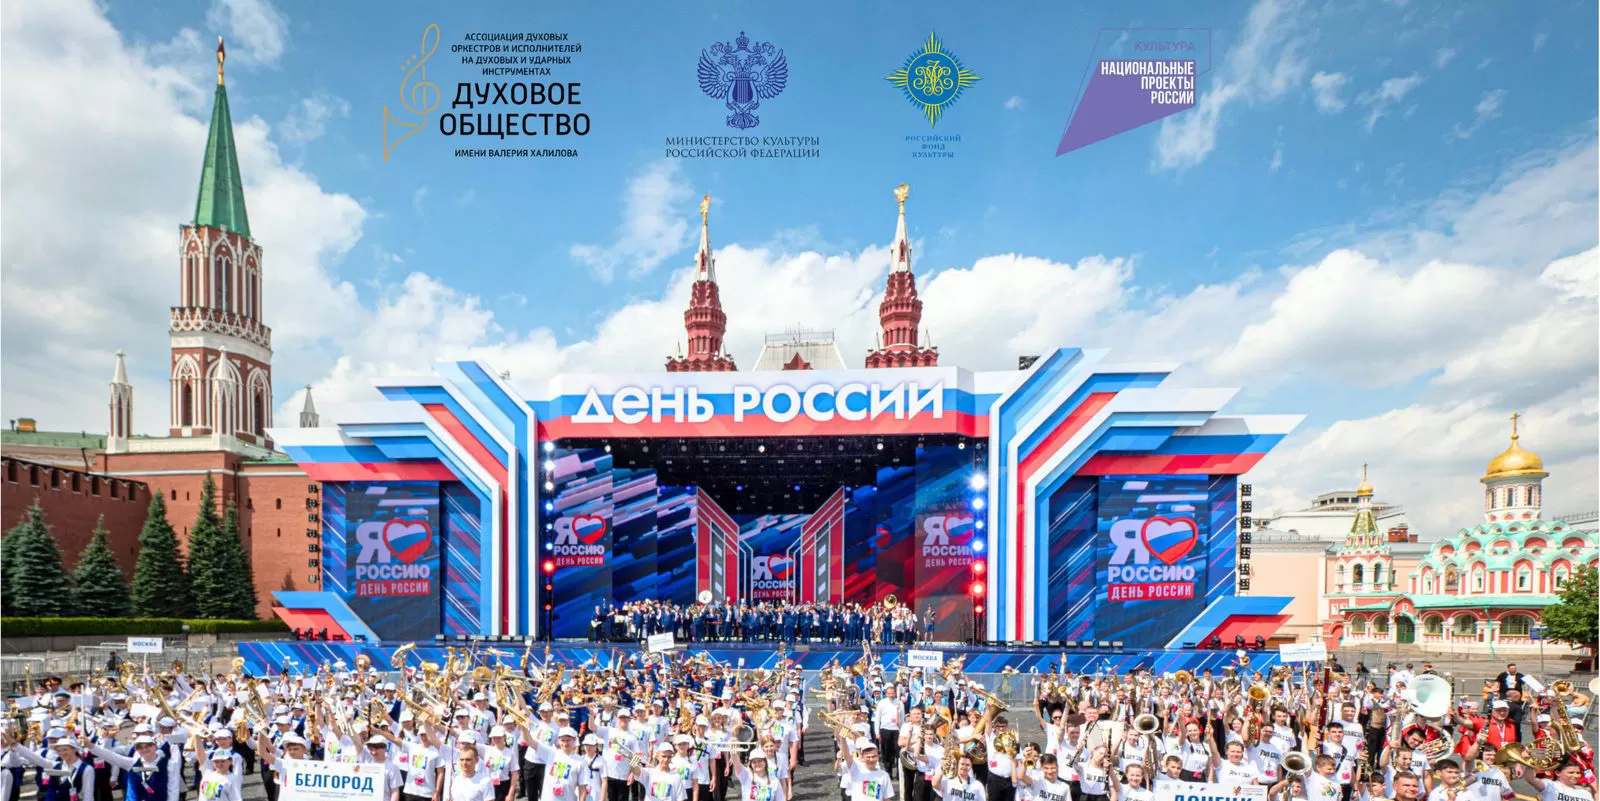 Фестиваль духовых оркестров «C тобой, страна!» открыл празднование Дня России на Красной площади